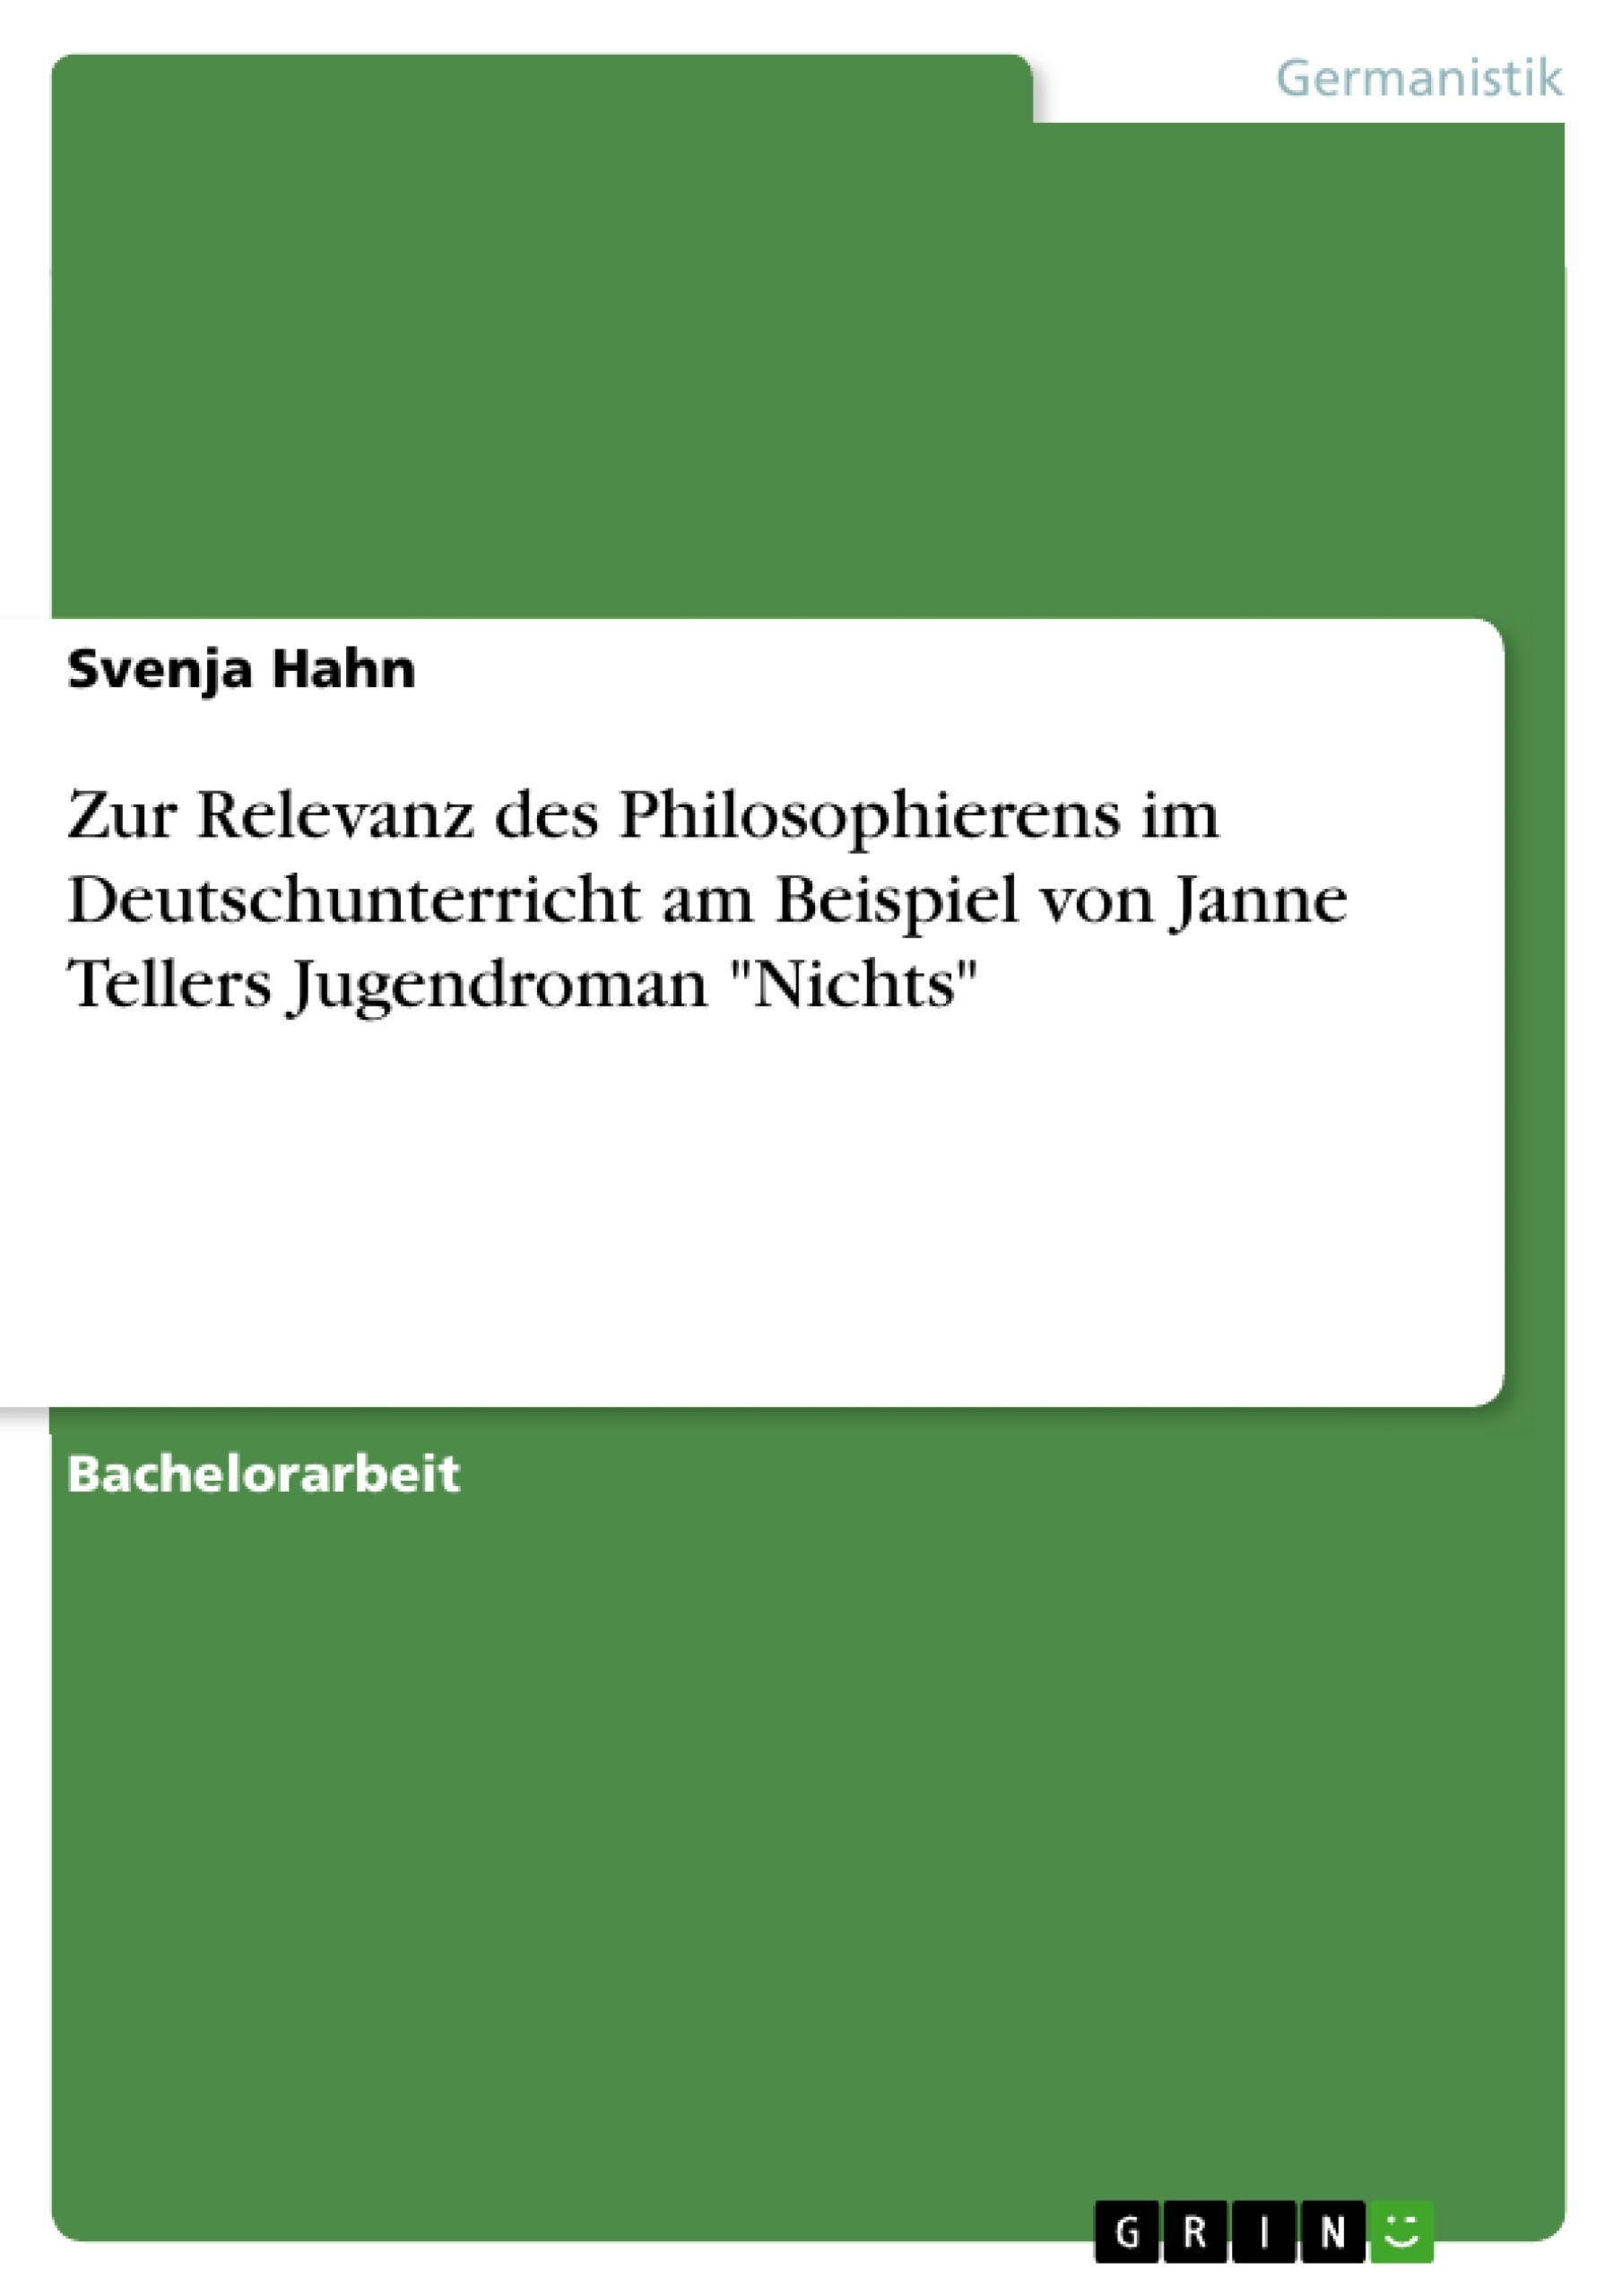 Título: Zur Relevanz des Philosophierens im Deutschunterricht am Beispiel von Janne Tellers Jugendroman "Nichts"